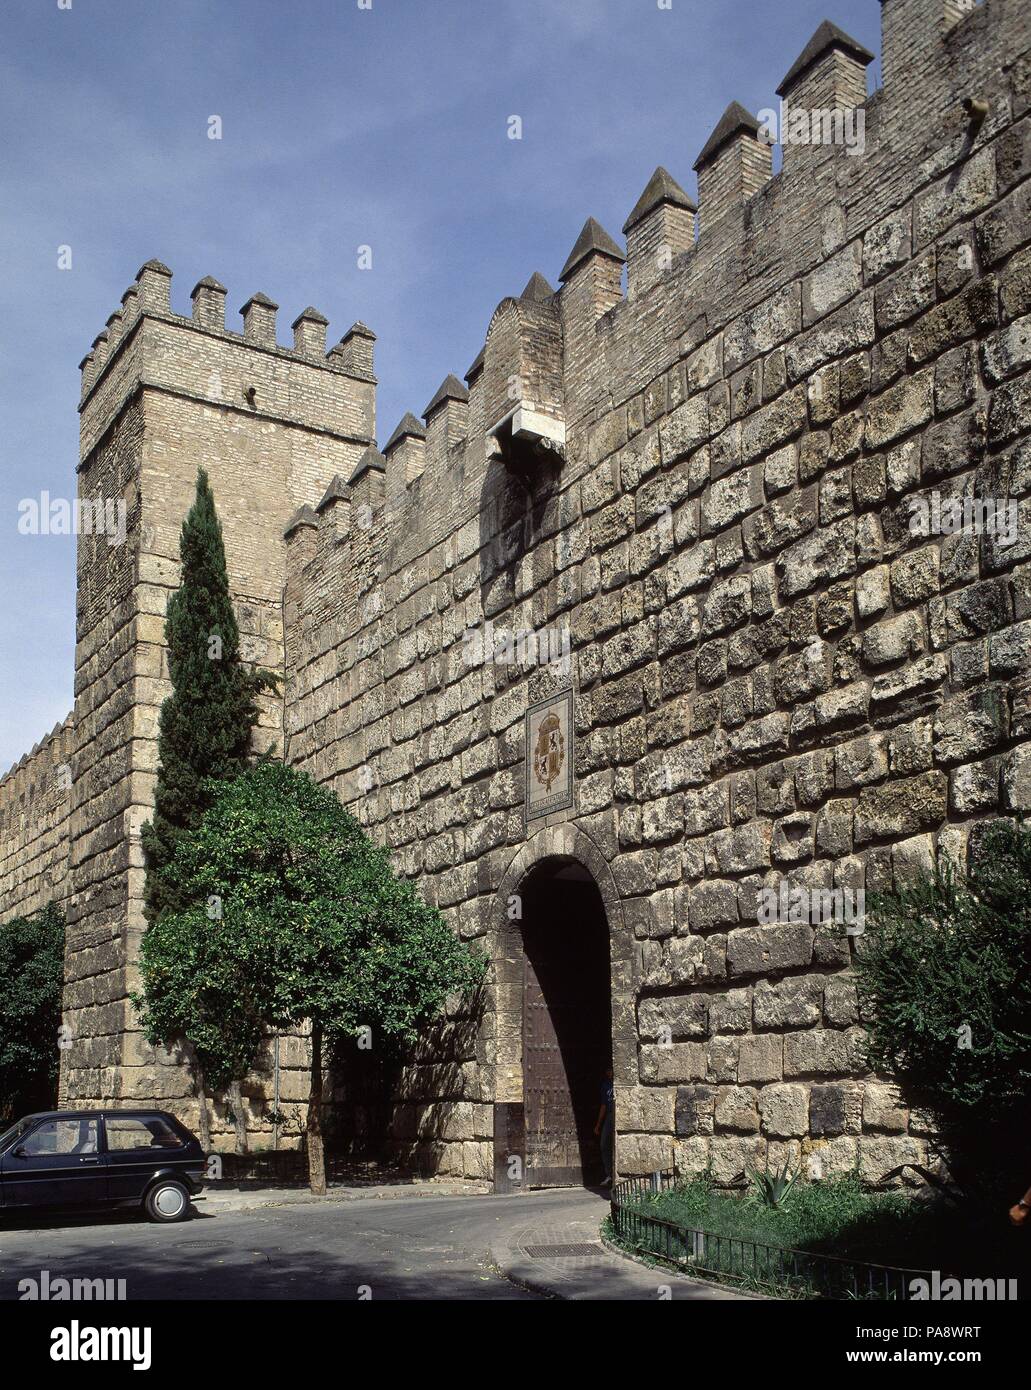 DAR EL IMAR- PUERTA DE entrada al recinto. Posizione: Reales Alcazares, Sevilla, Sevilla, Spagna. Foto Stock